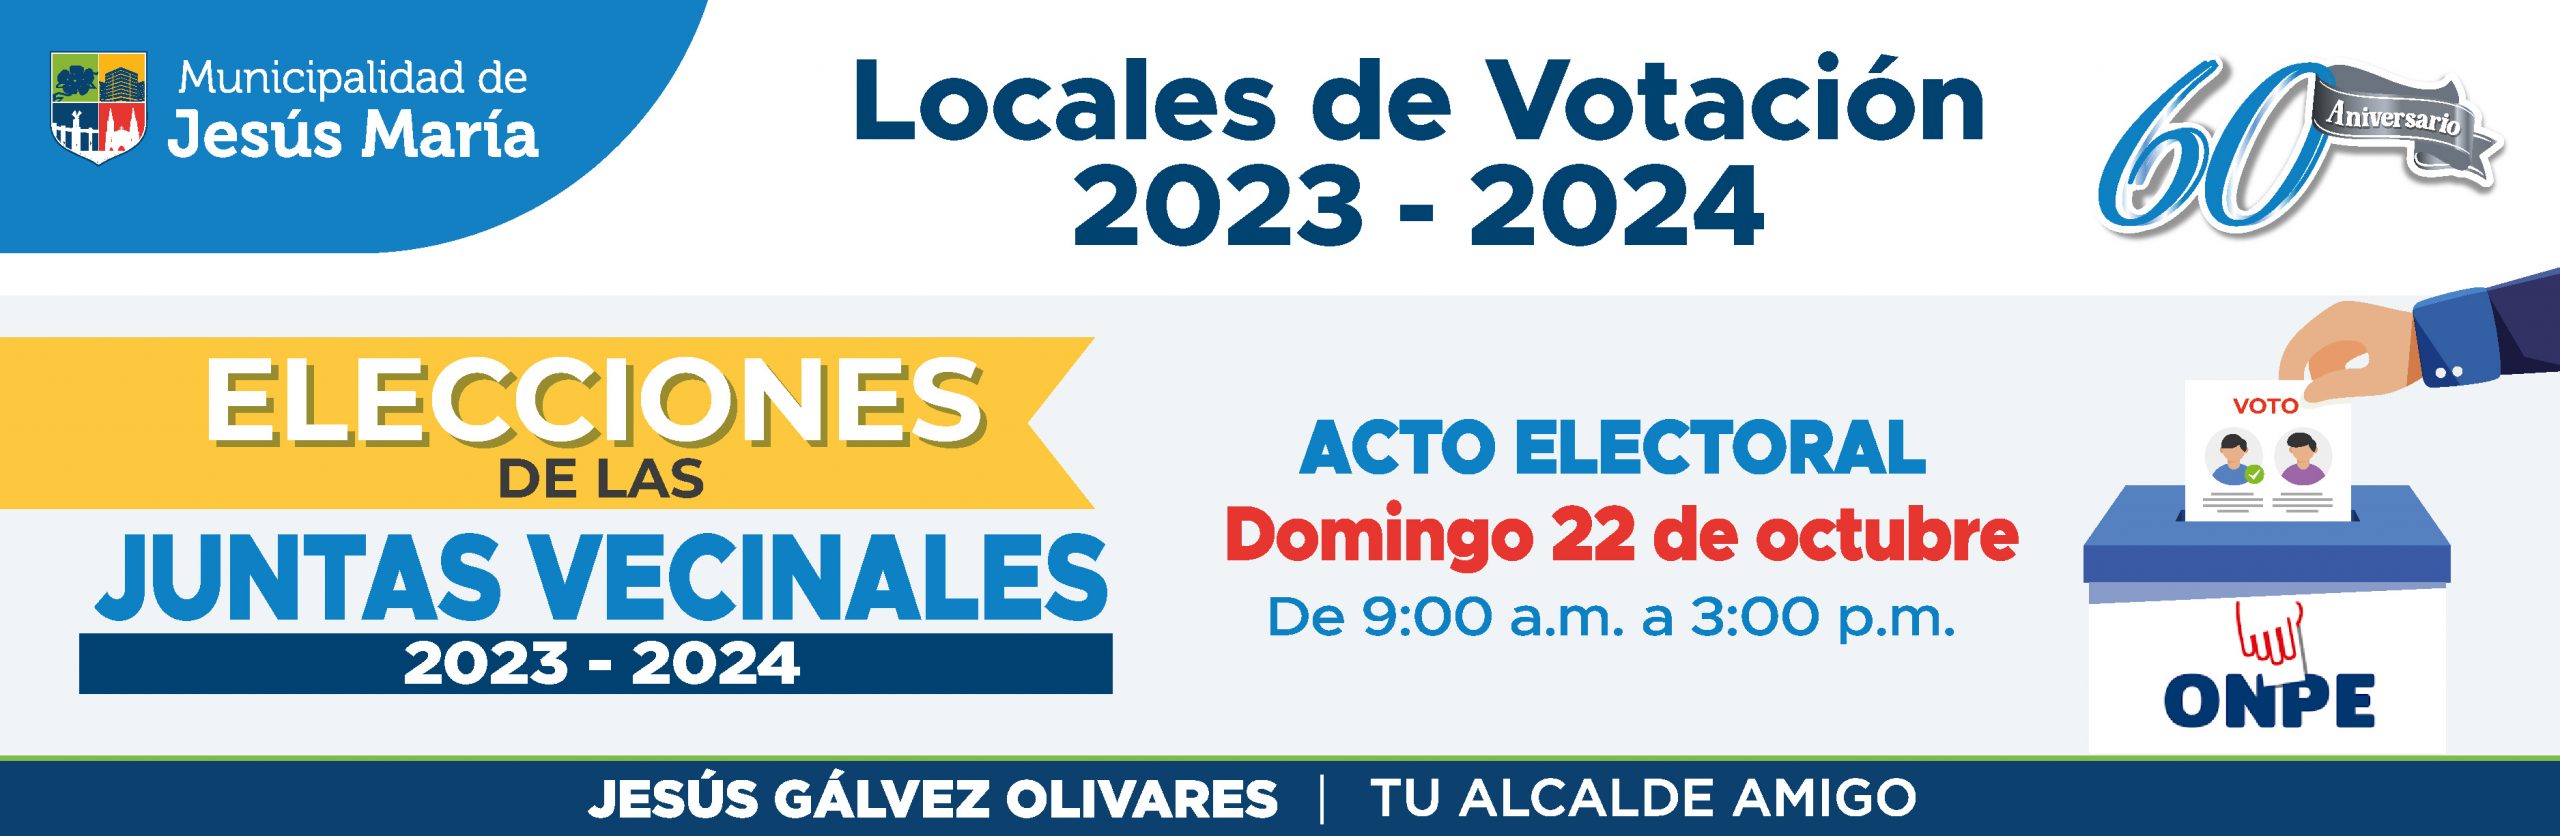 Banner web locales de votación 2023 - 2024_Mesa de trabajo 1 copia (1)